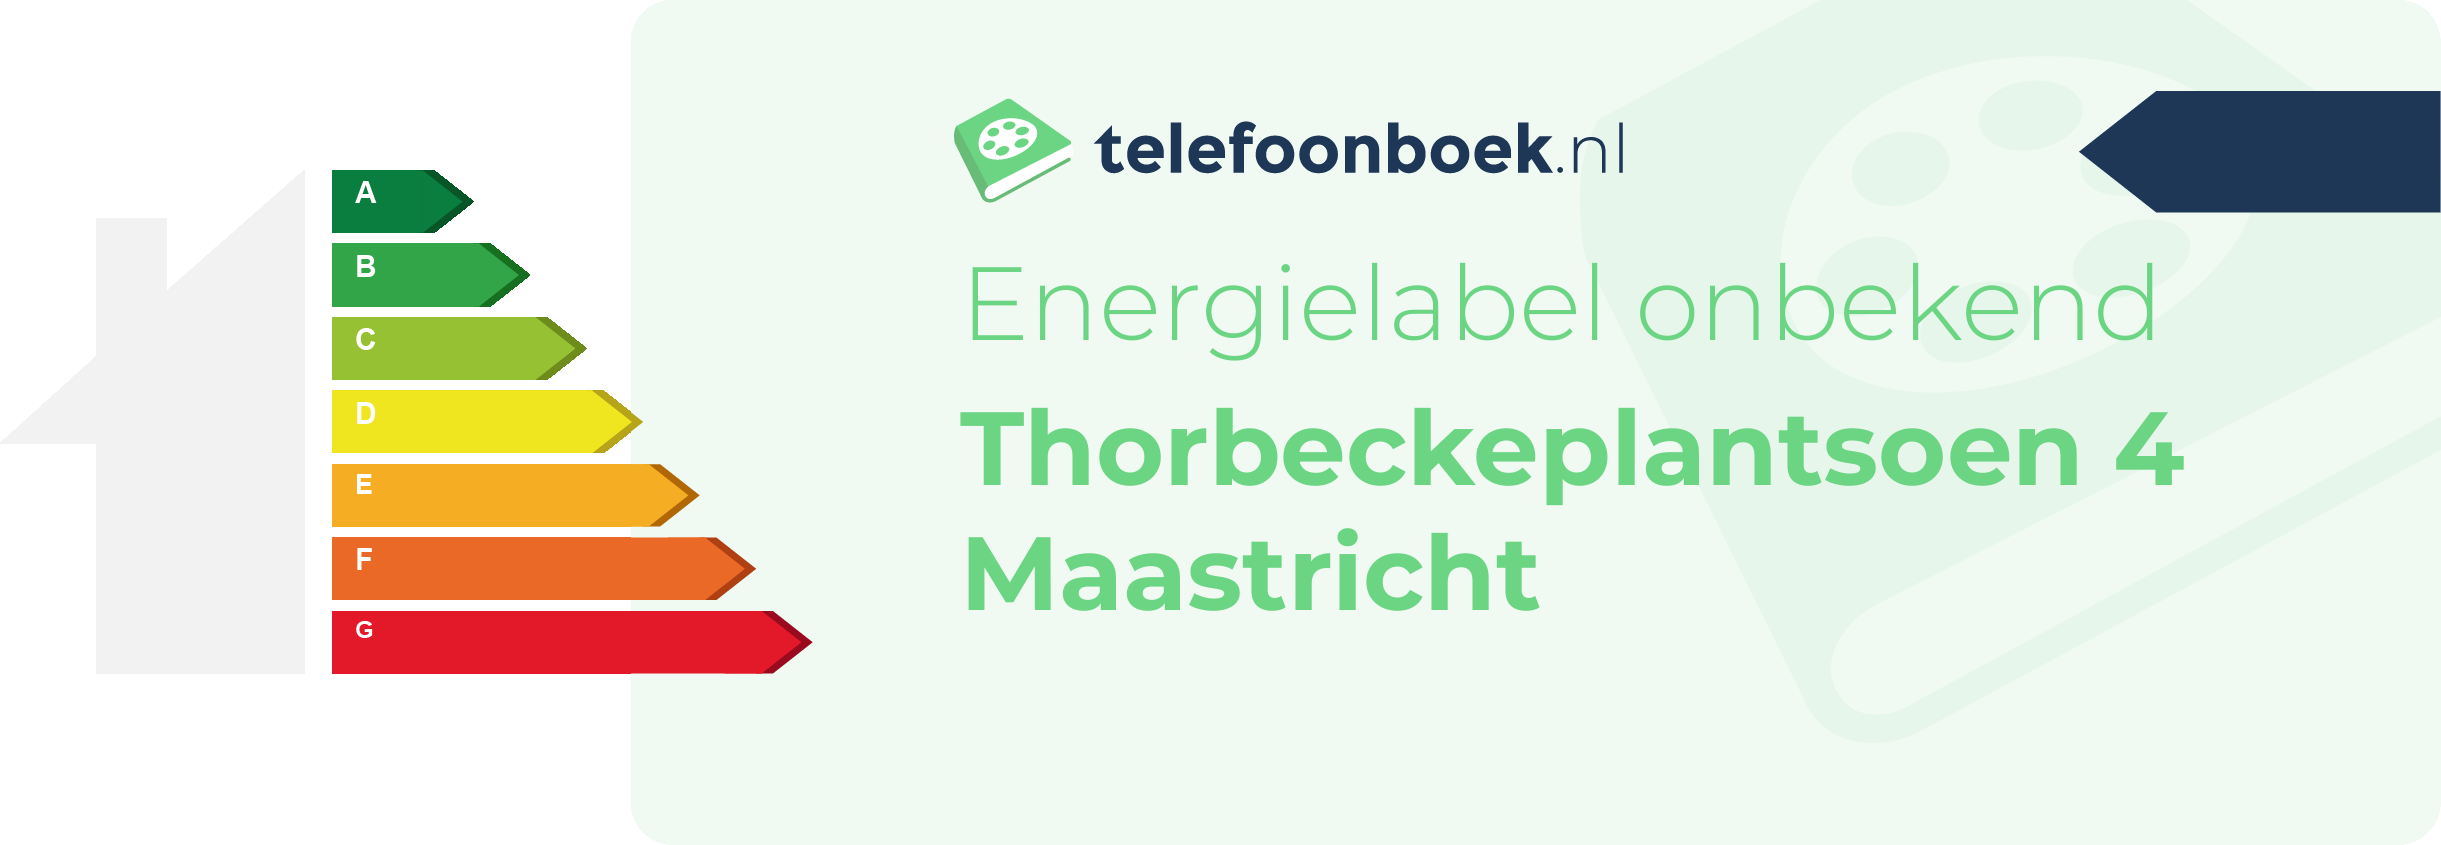 Energielabel Thorbeckeplantsoen 4 Maastricht